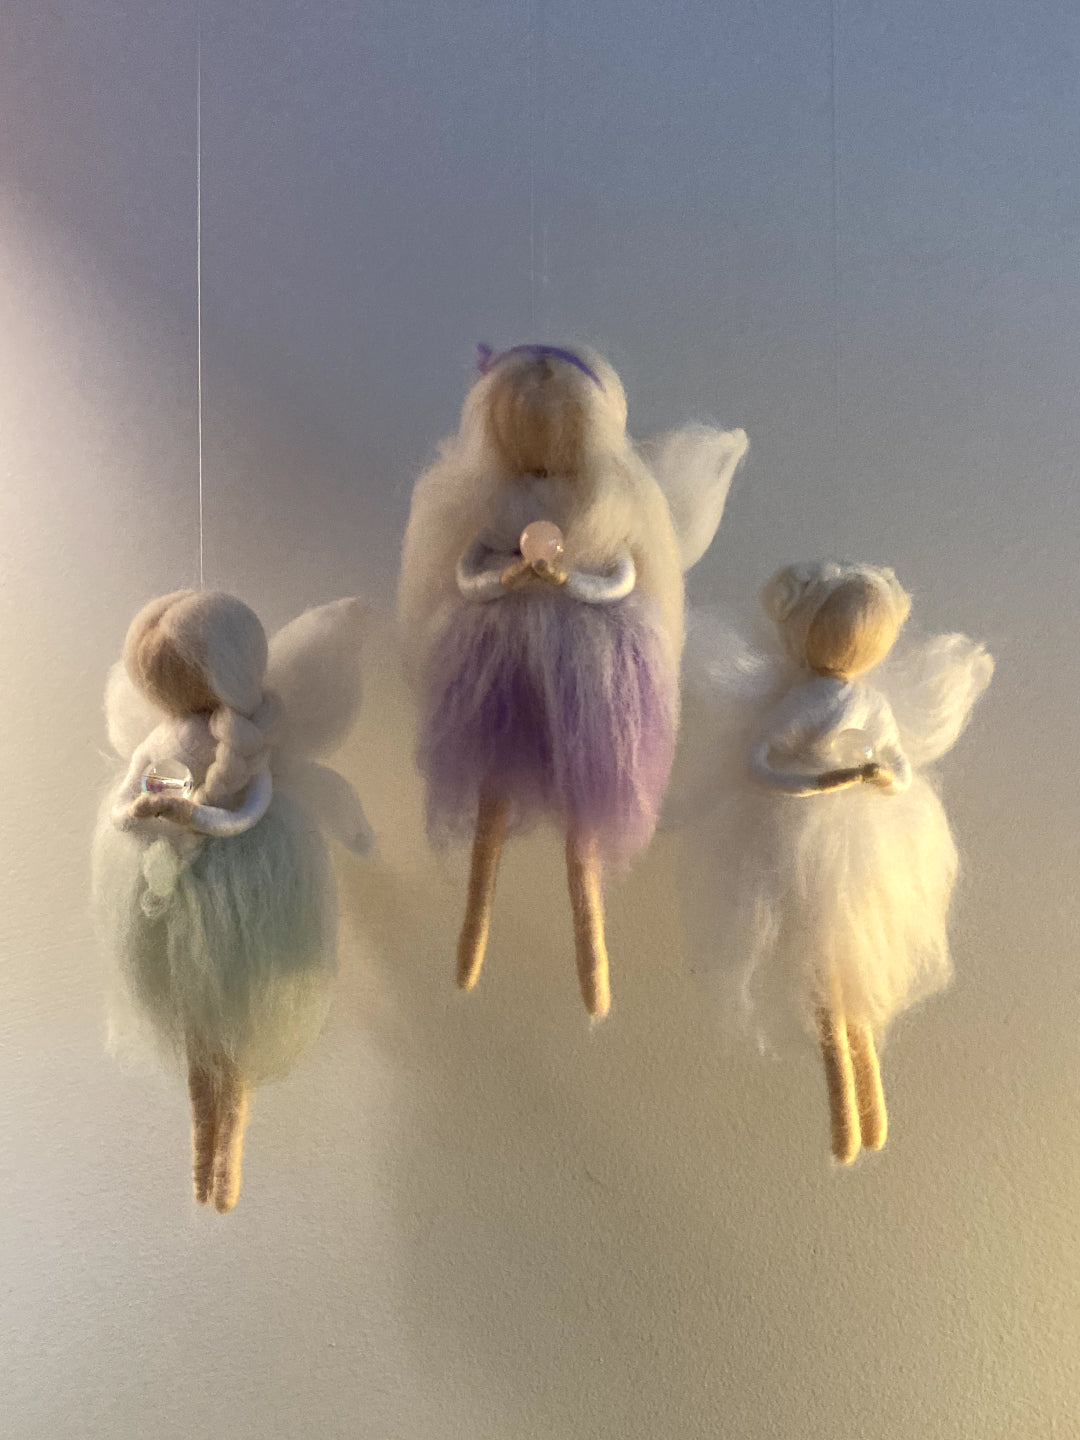 Babyluv Studio x Sirelimireli Fairy - Rose Quartz, vilditud haldjas roosa kvarts